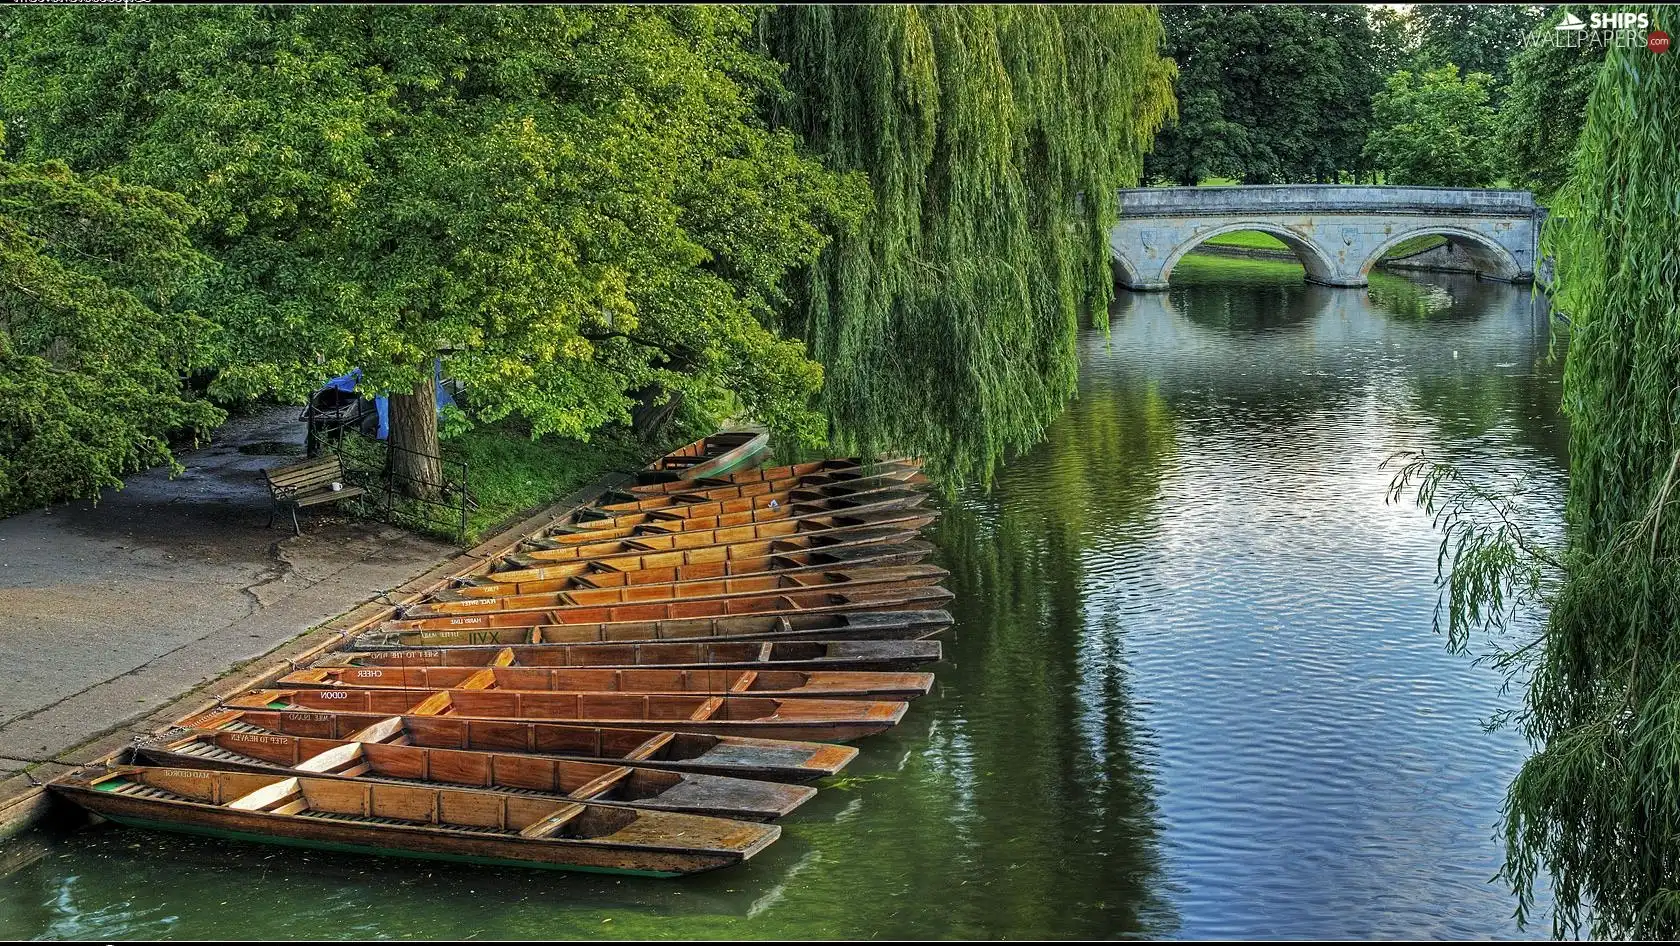 Park, River, bridge, boats